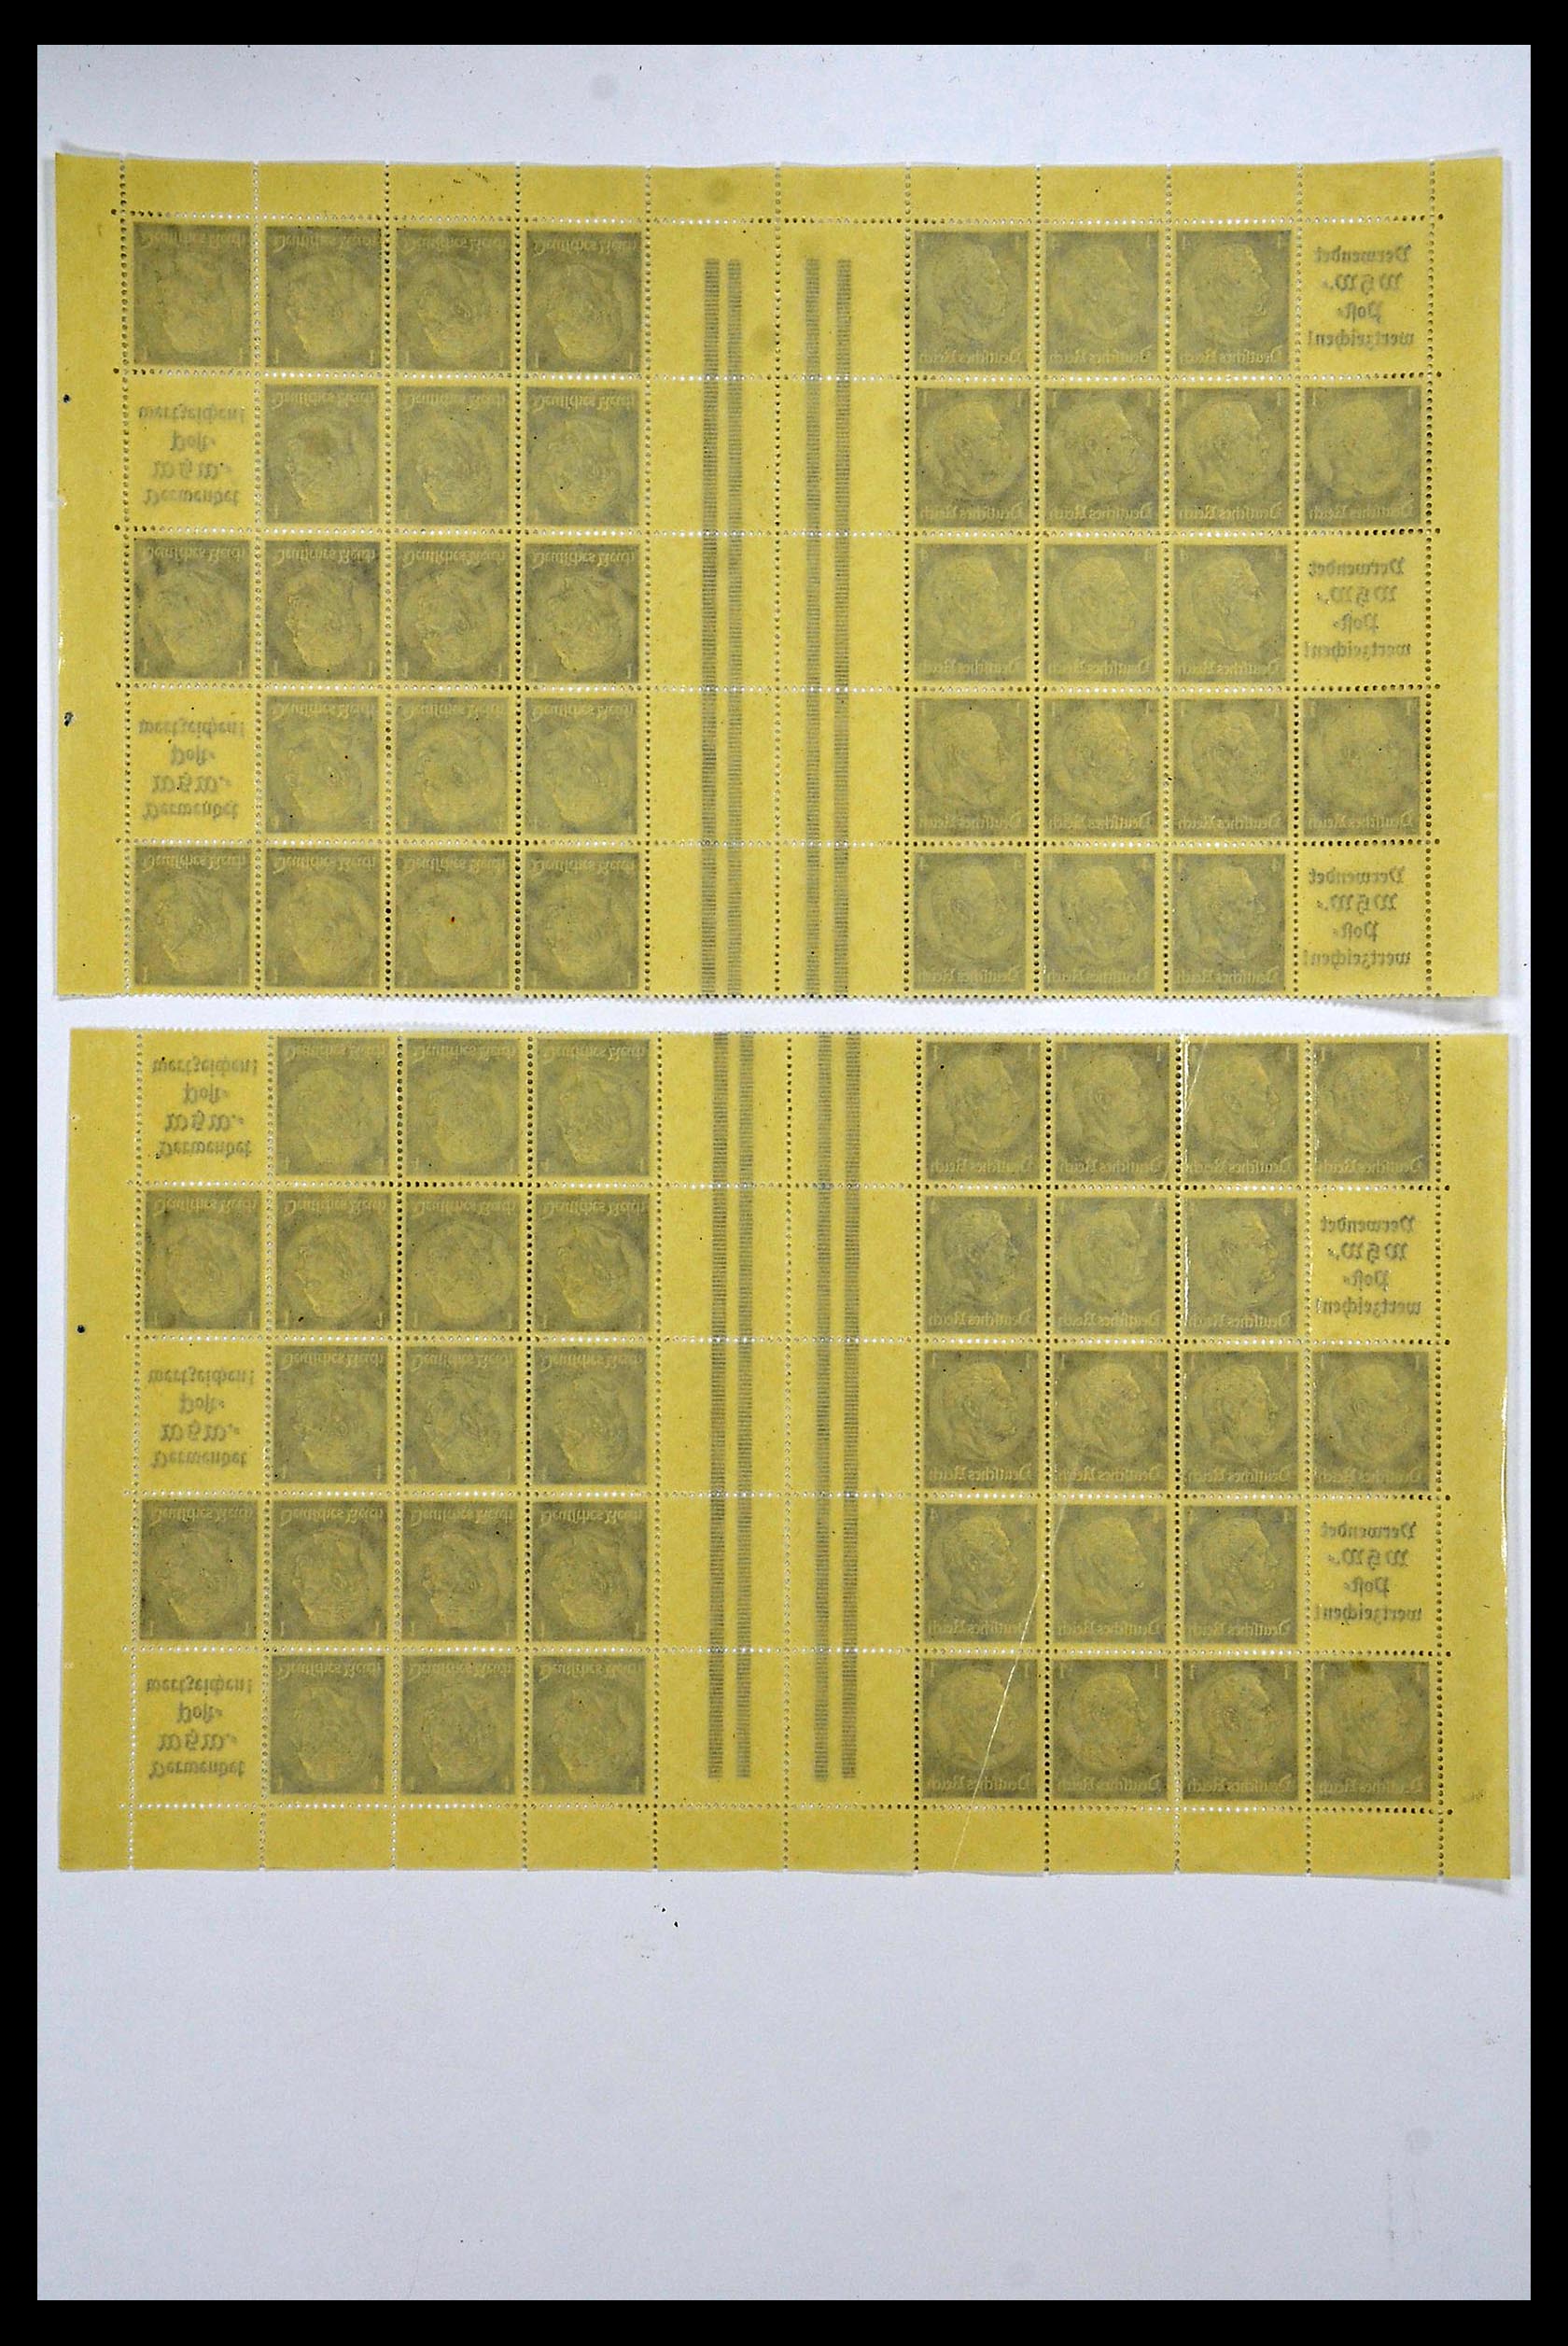 34164 048 - Stamp collection 34164 German Reich Markenheftchenbogen 1933-1942.